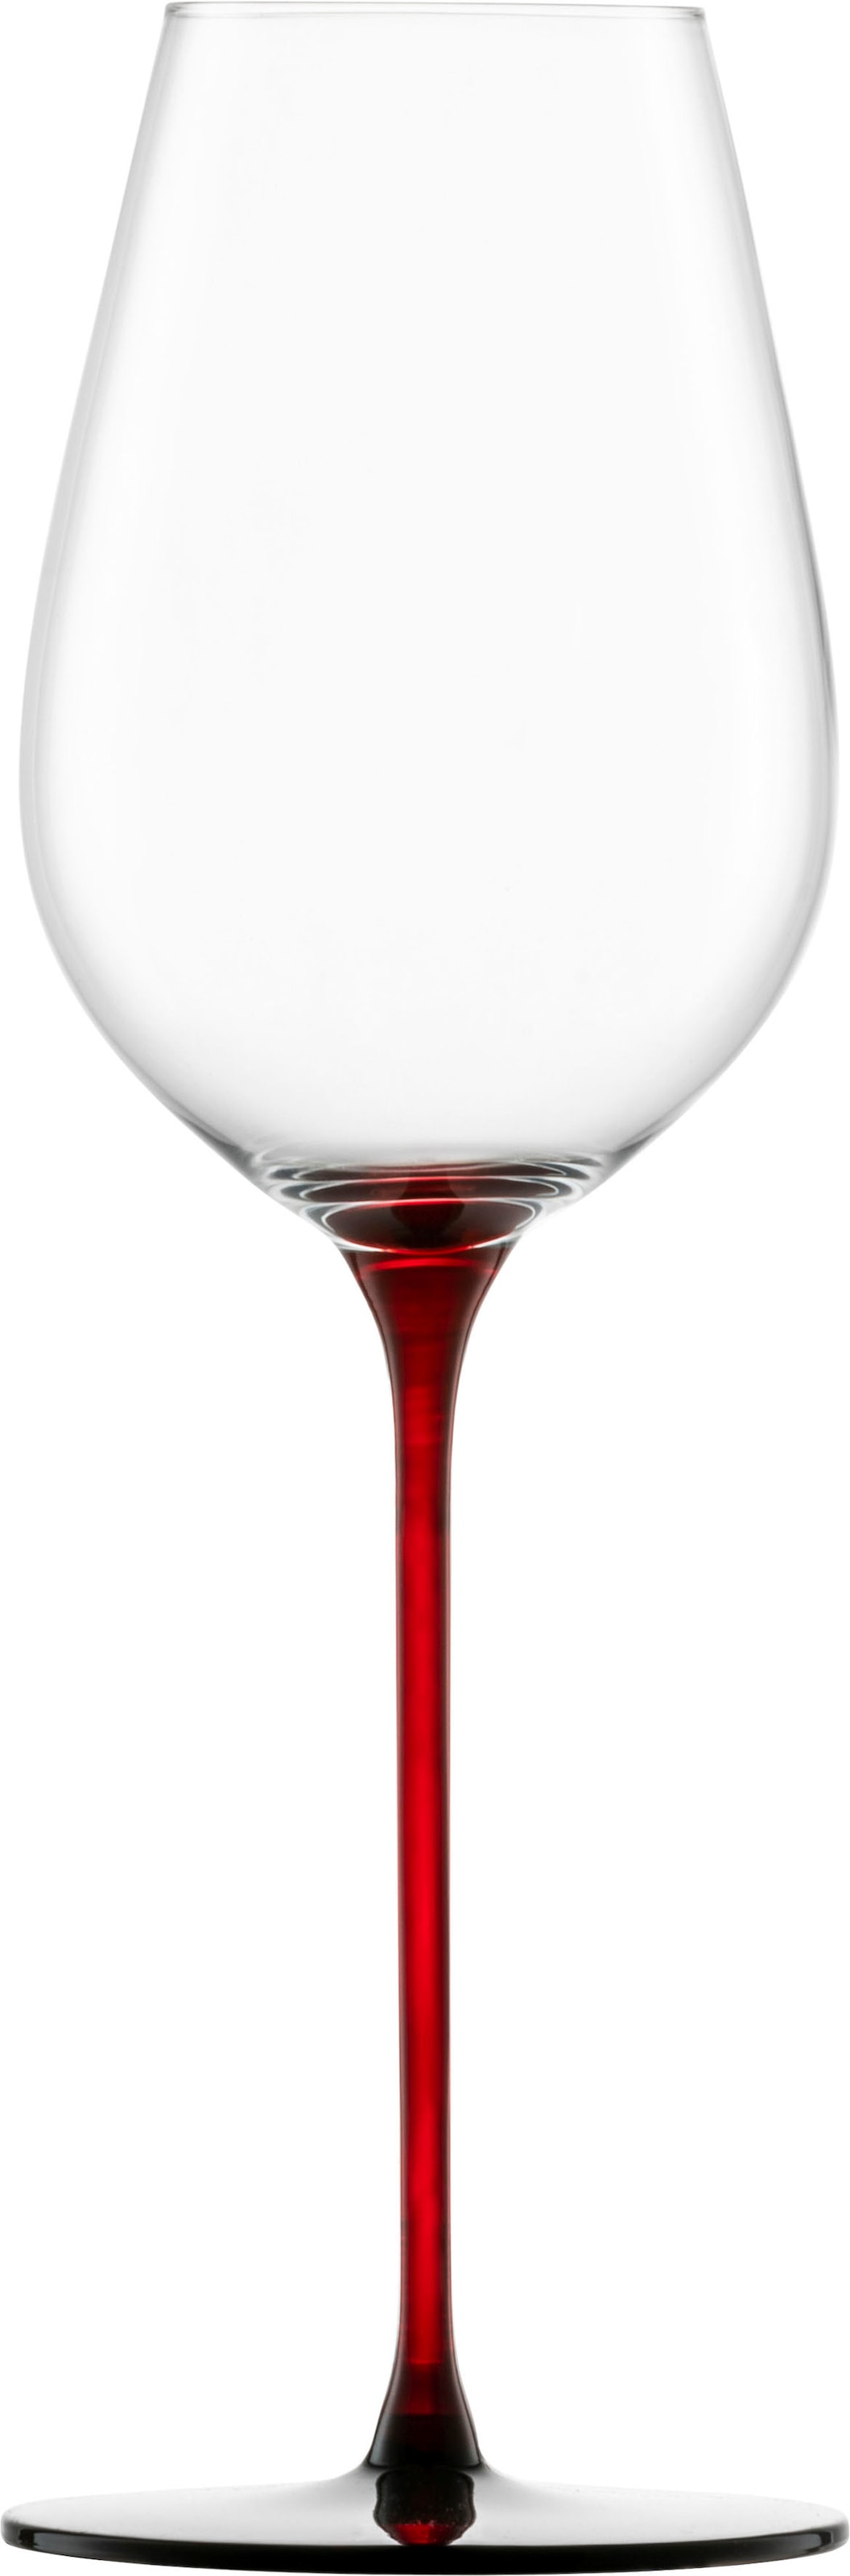 Eisch Champagnerglas »RED SENSISPLUS«, (Set, 2 tlg., 2 Gläser im Geschenkkarton), 400 ml, 2-teilig, Made in Germany